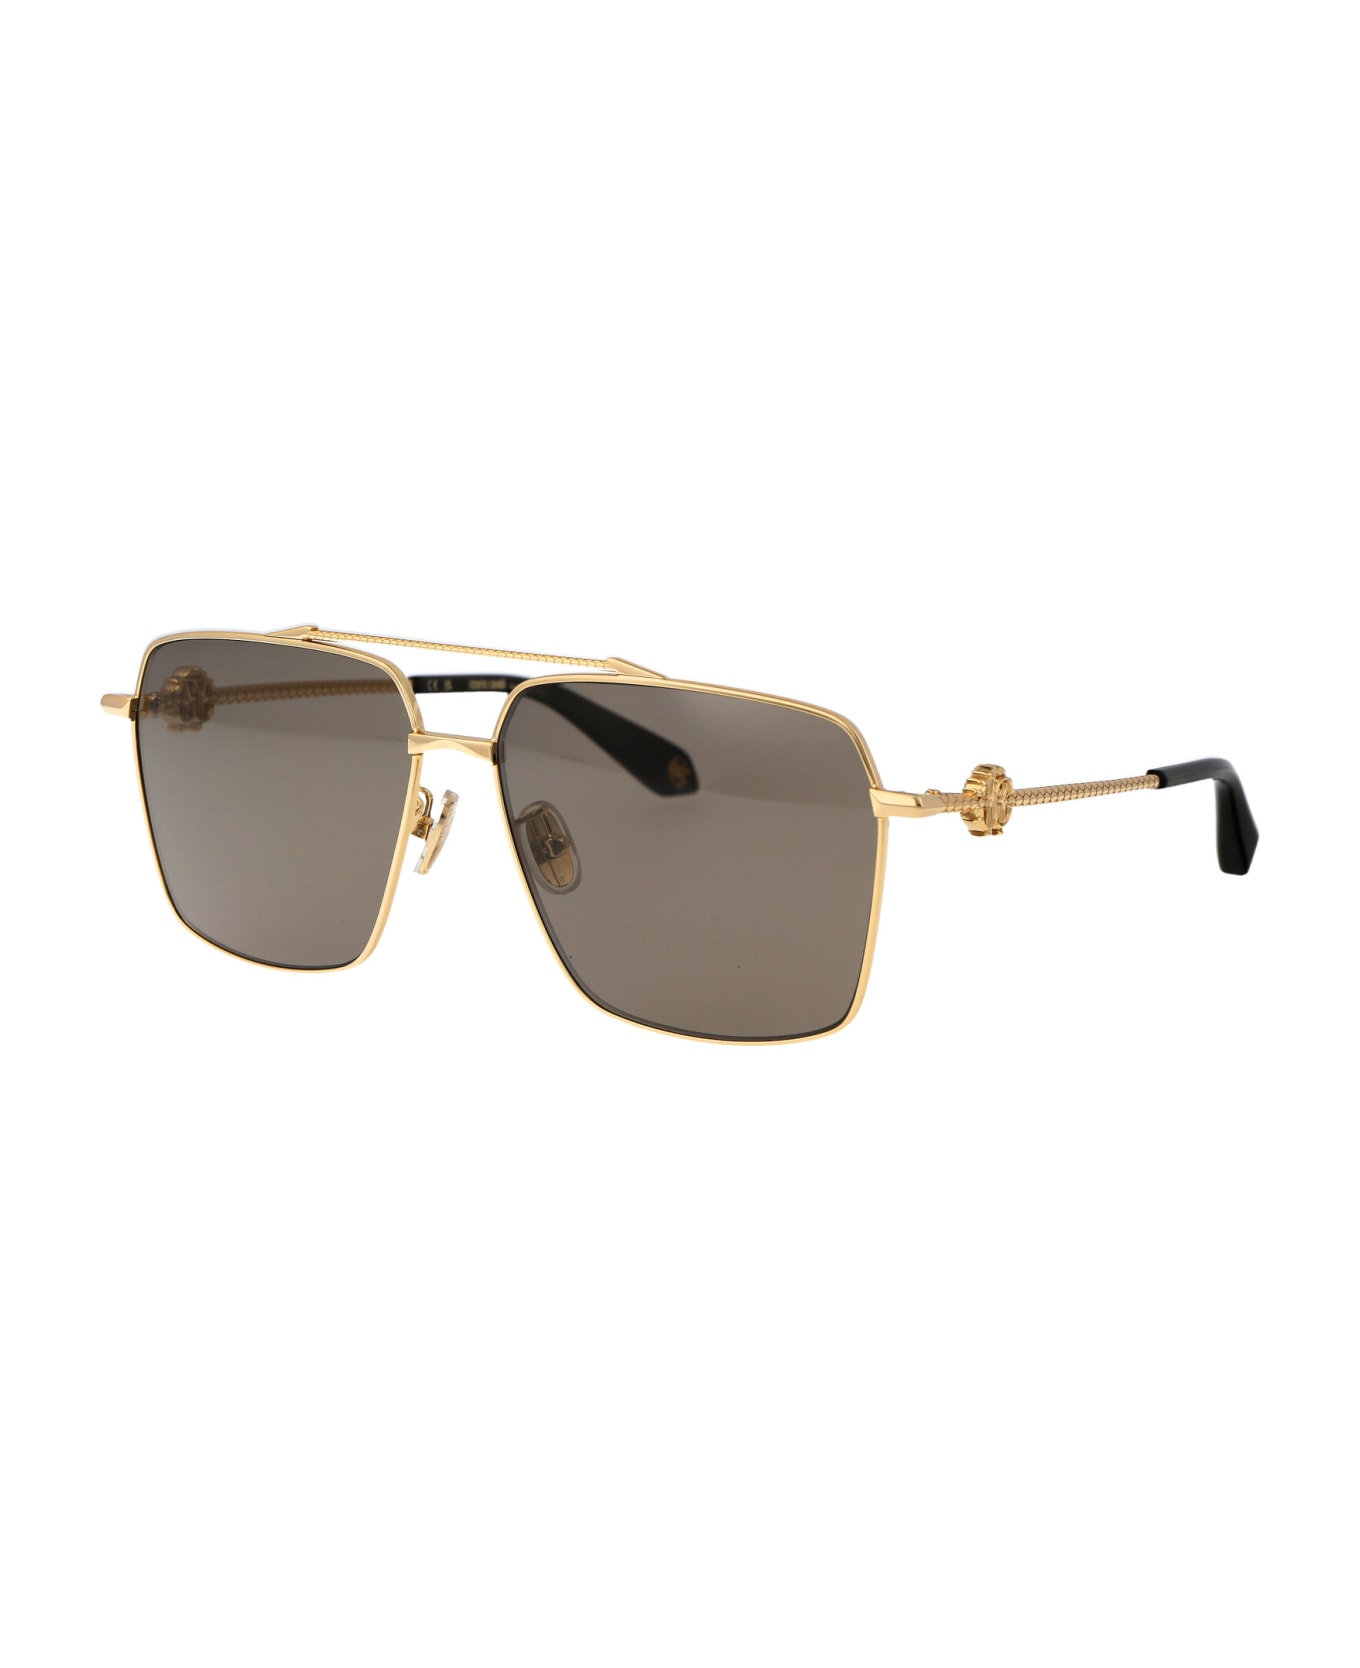 Roberto Cavalli Src036v Sunglasses - 400P GOLD